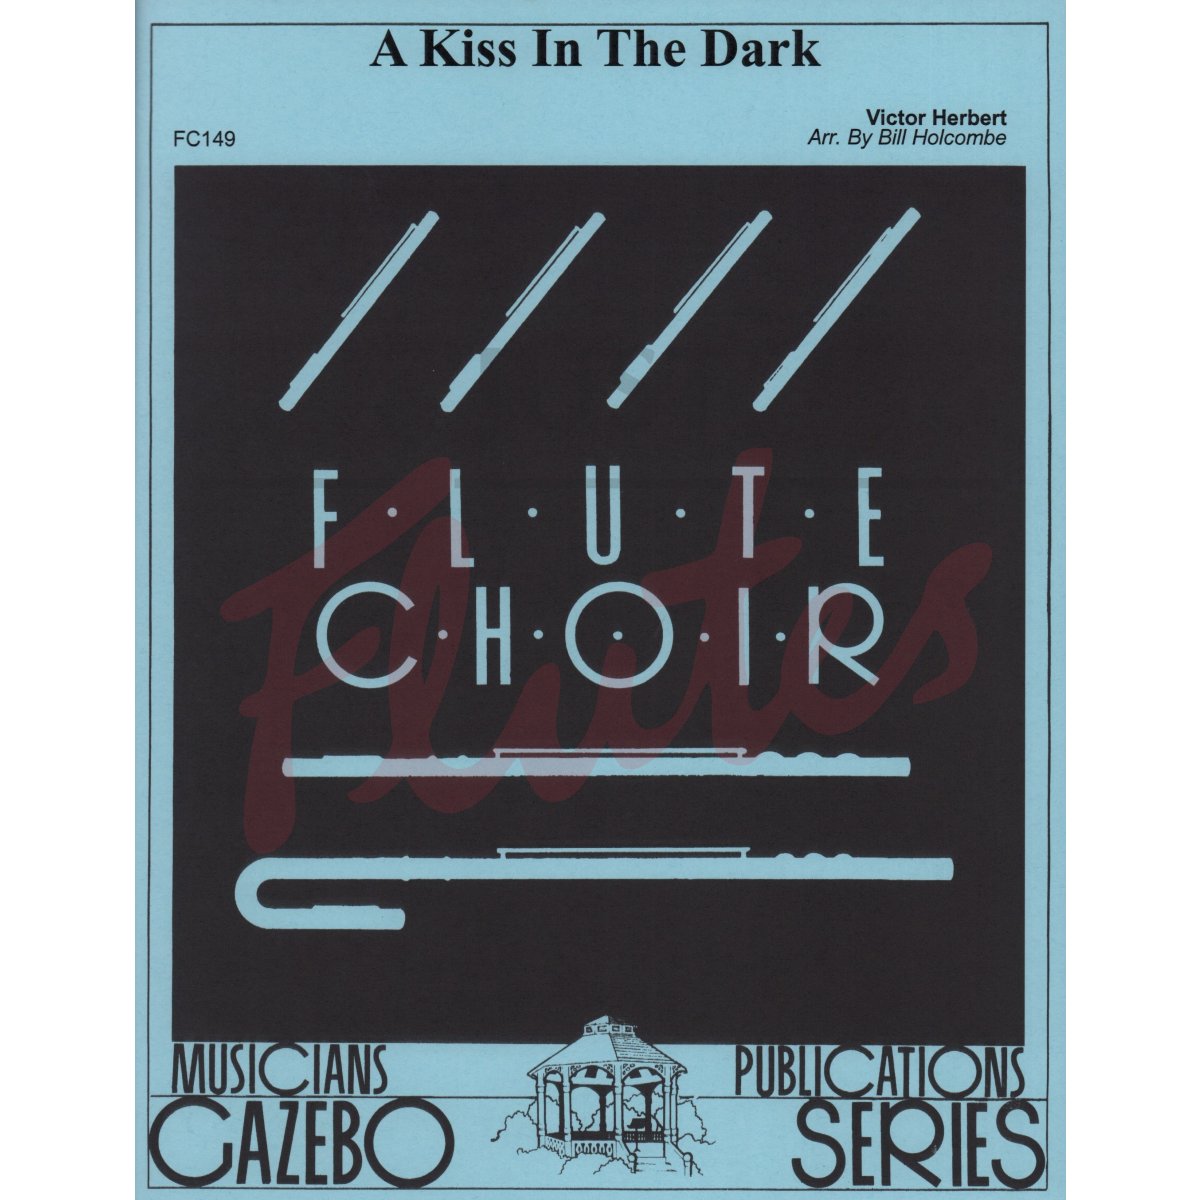 A Kiss in the Dark for Flute Choir